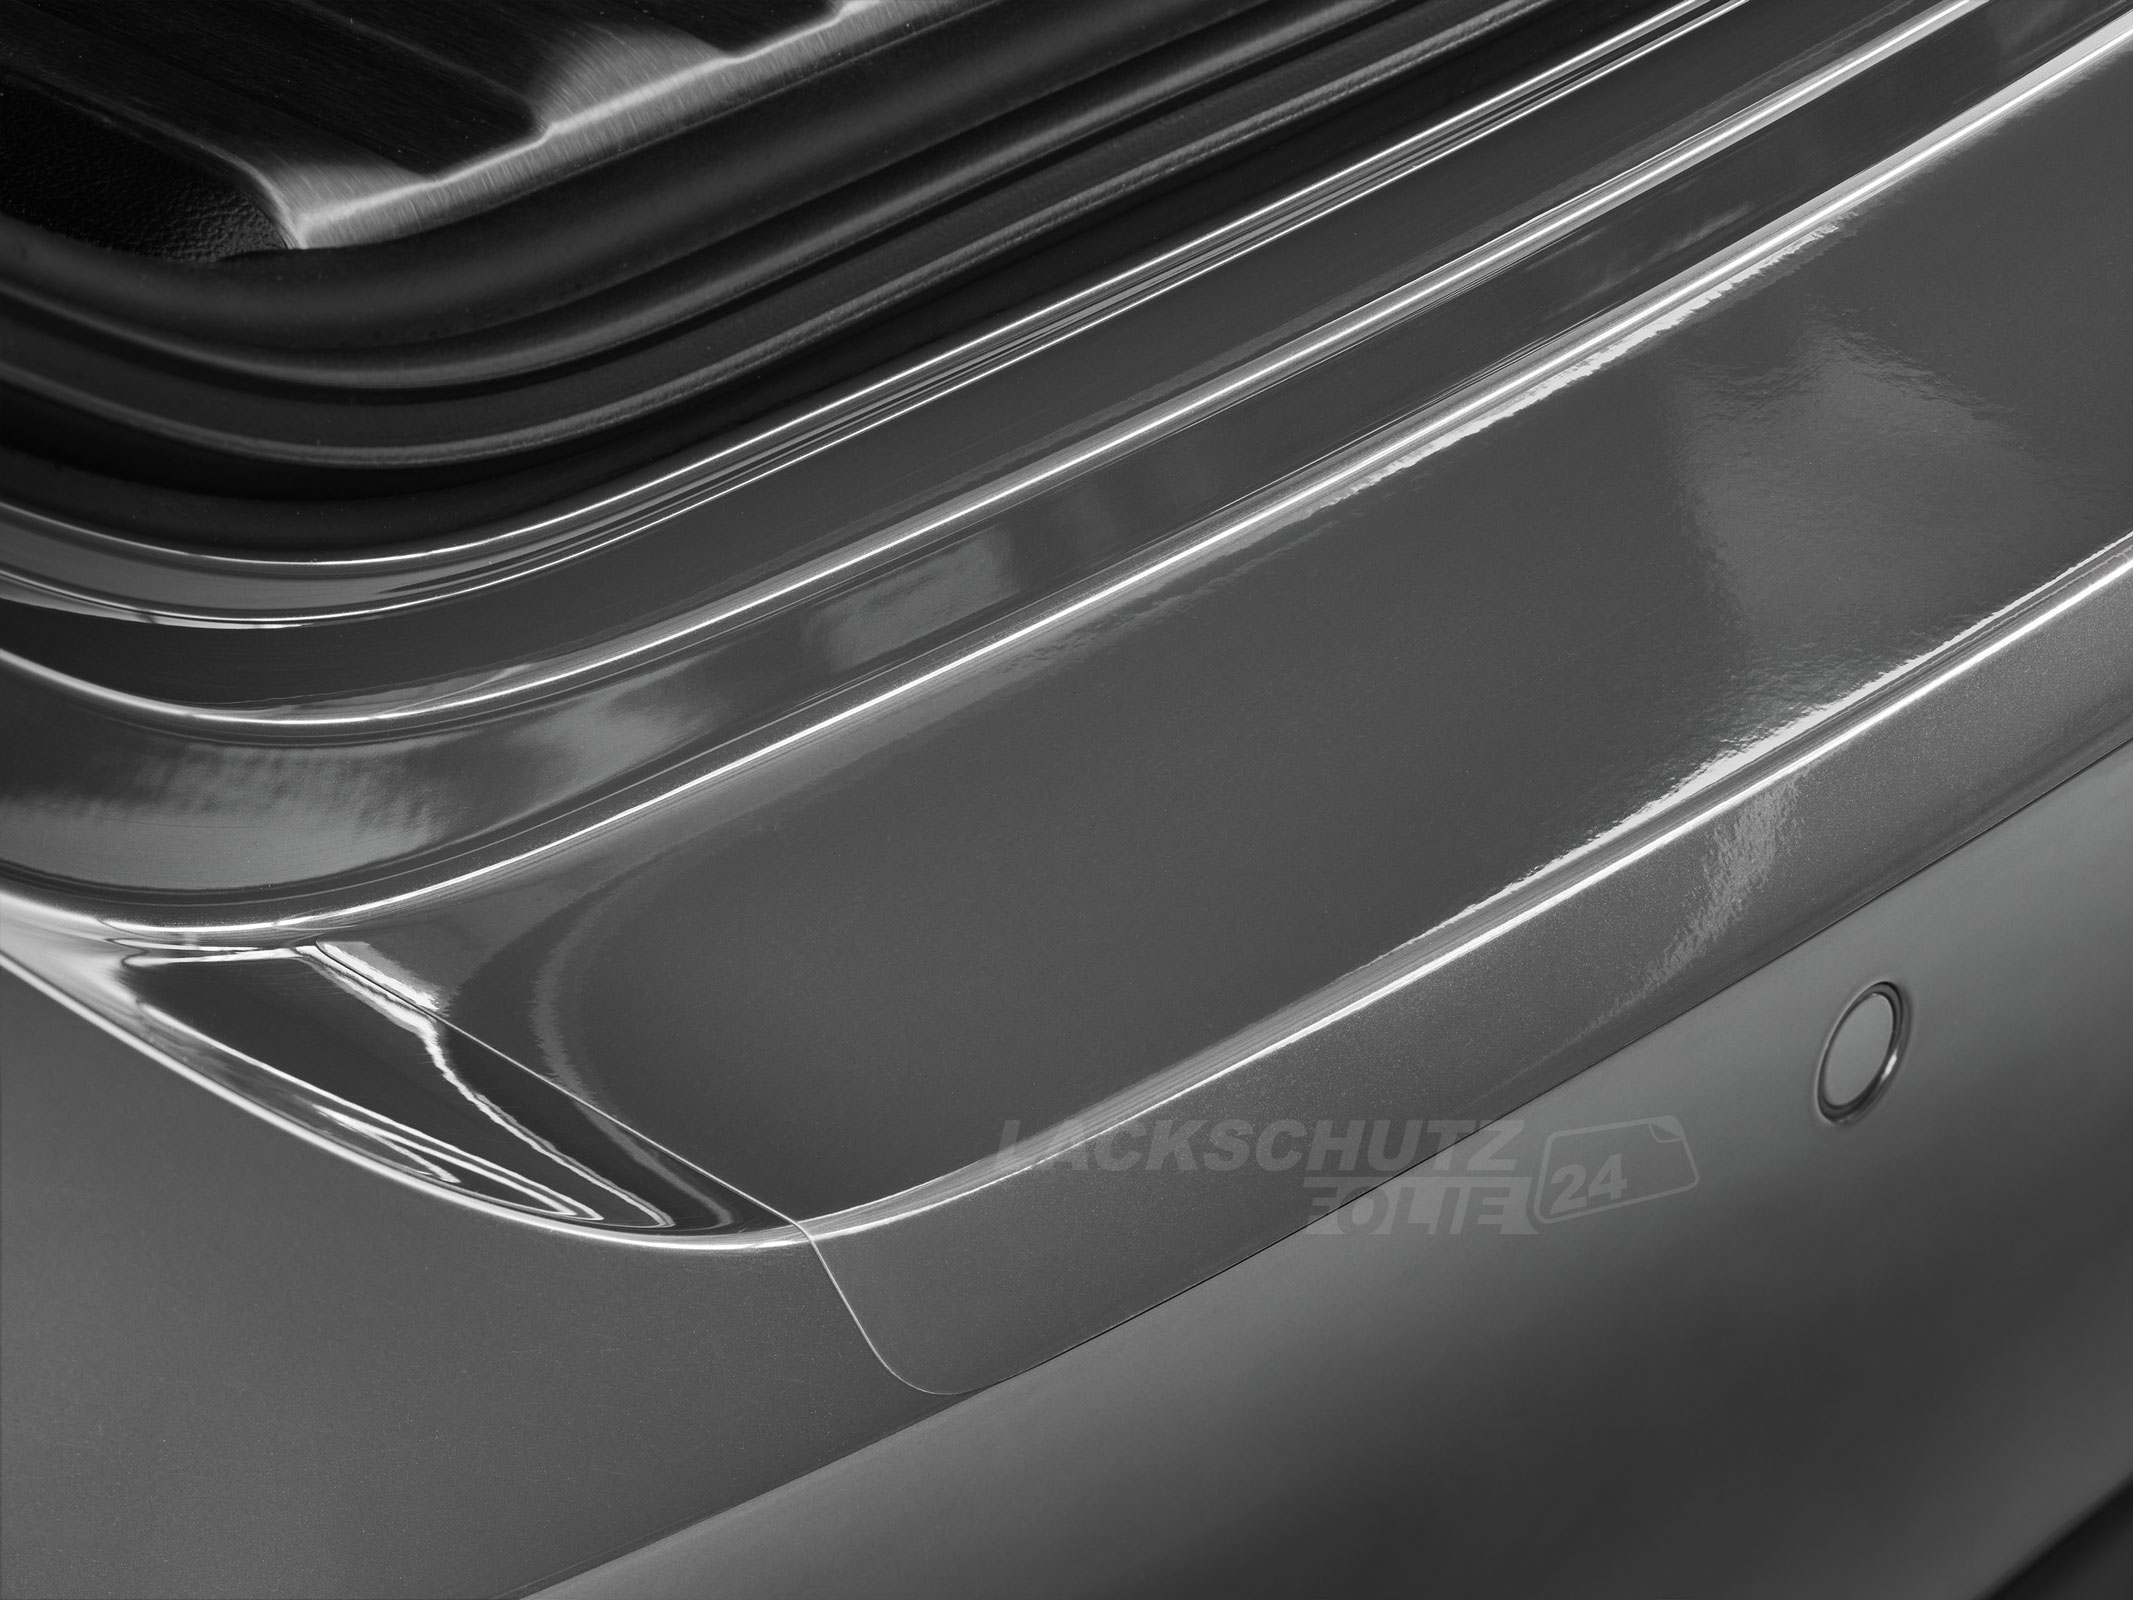 Ladekantenschutzfolie - Transparent Glatt Hochglänzend 240 µm stark für Mercedes-Benz A-Klasse Typ V177, Limousine, ab BJ 05/2018